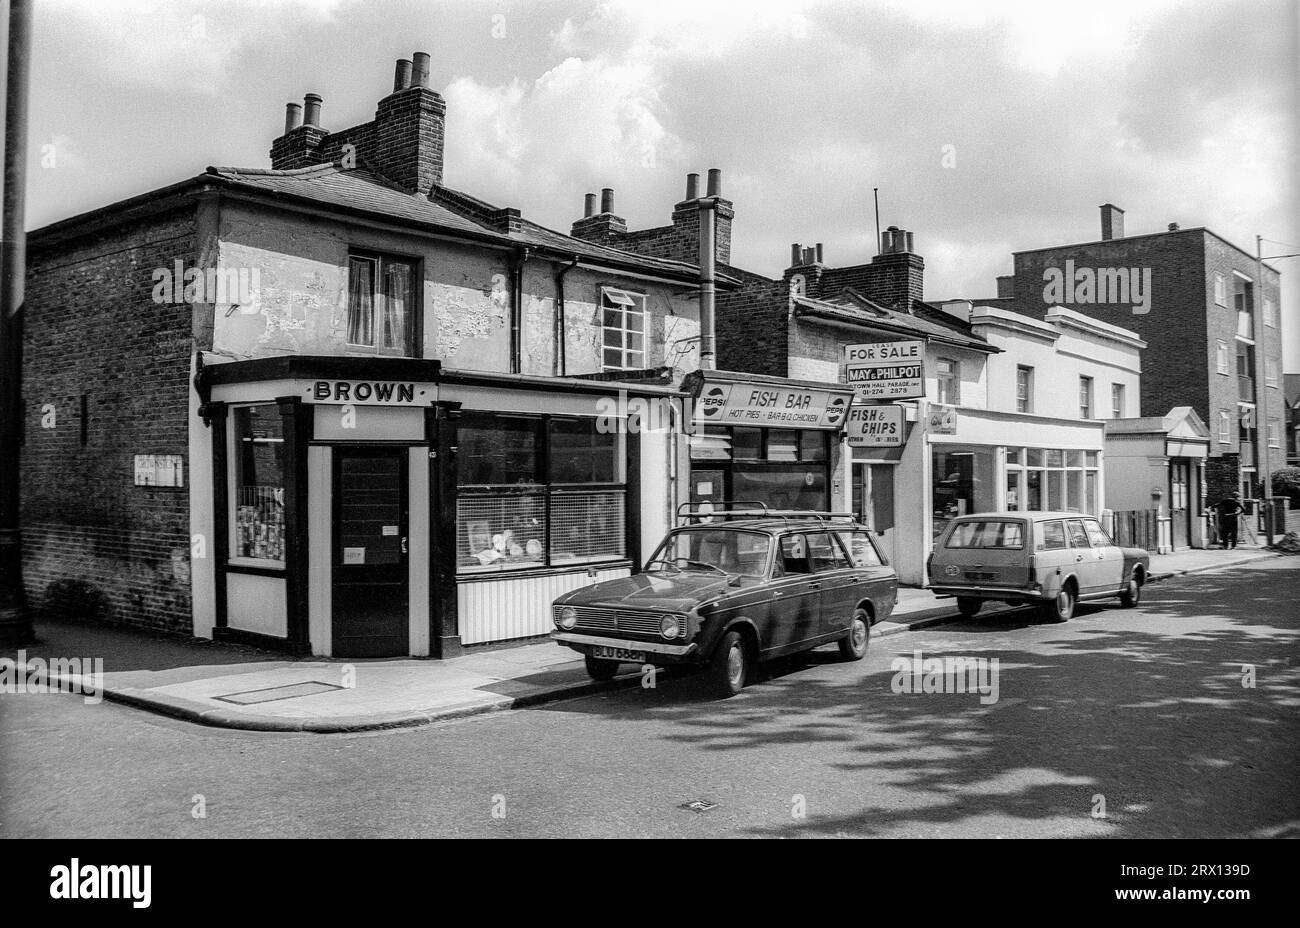 Photographie en noir et blanc d'archives de 1975 de magasins à l'angle de Crownstone Road et Brixton Water Lane à Lambeth, au sud de Londres. Depuis démoli. Banque D'Images